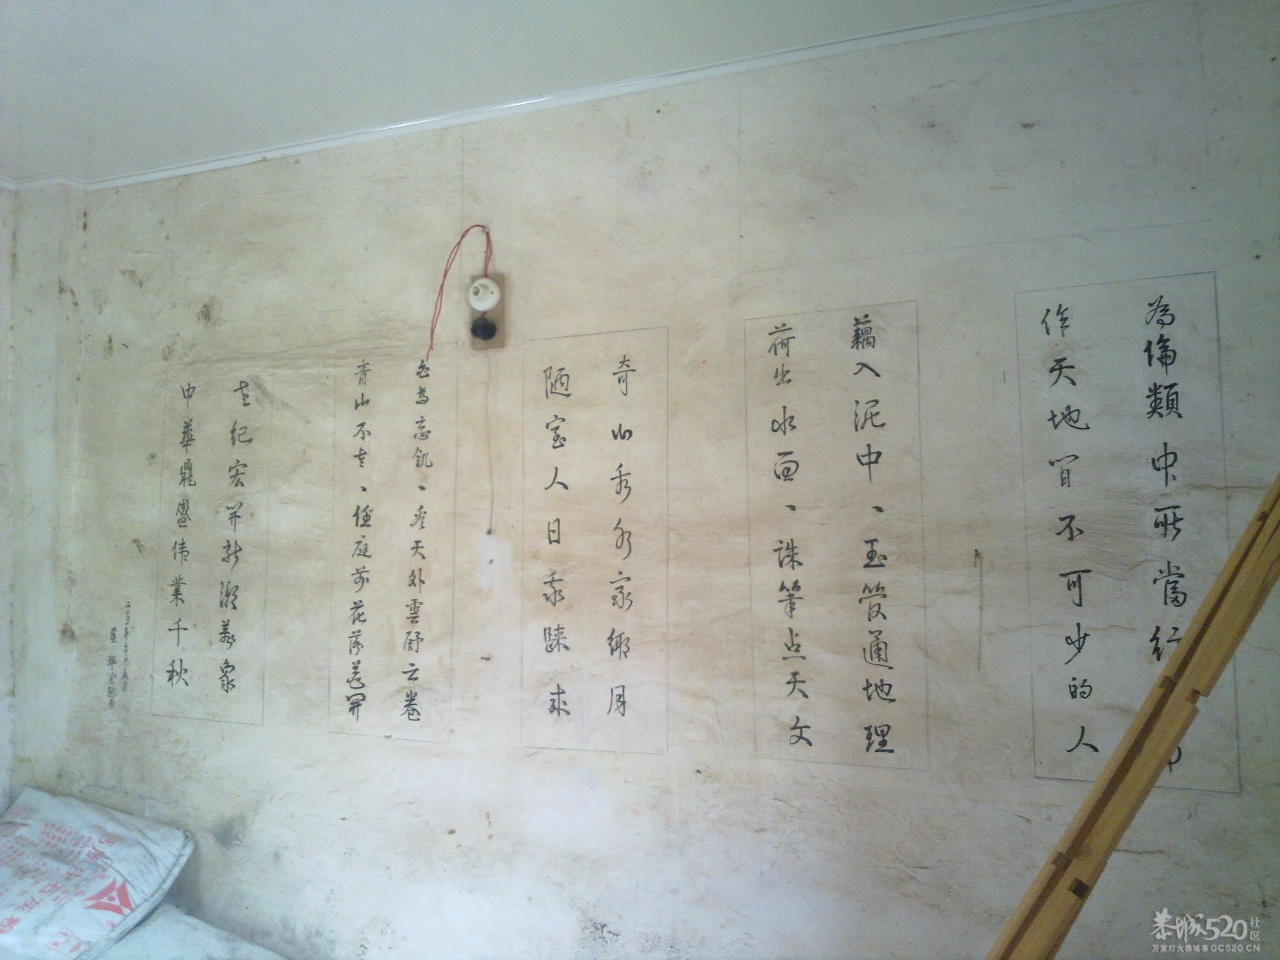 在邓扒村一间民房墙上拍到的诗词95 / 作者:金网 / 帖子ID:11390